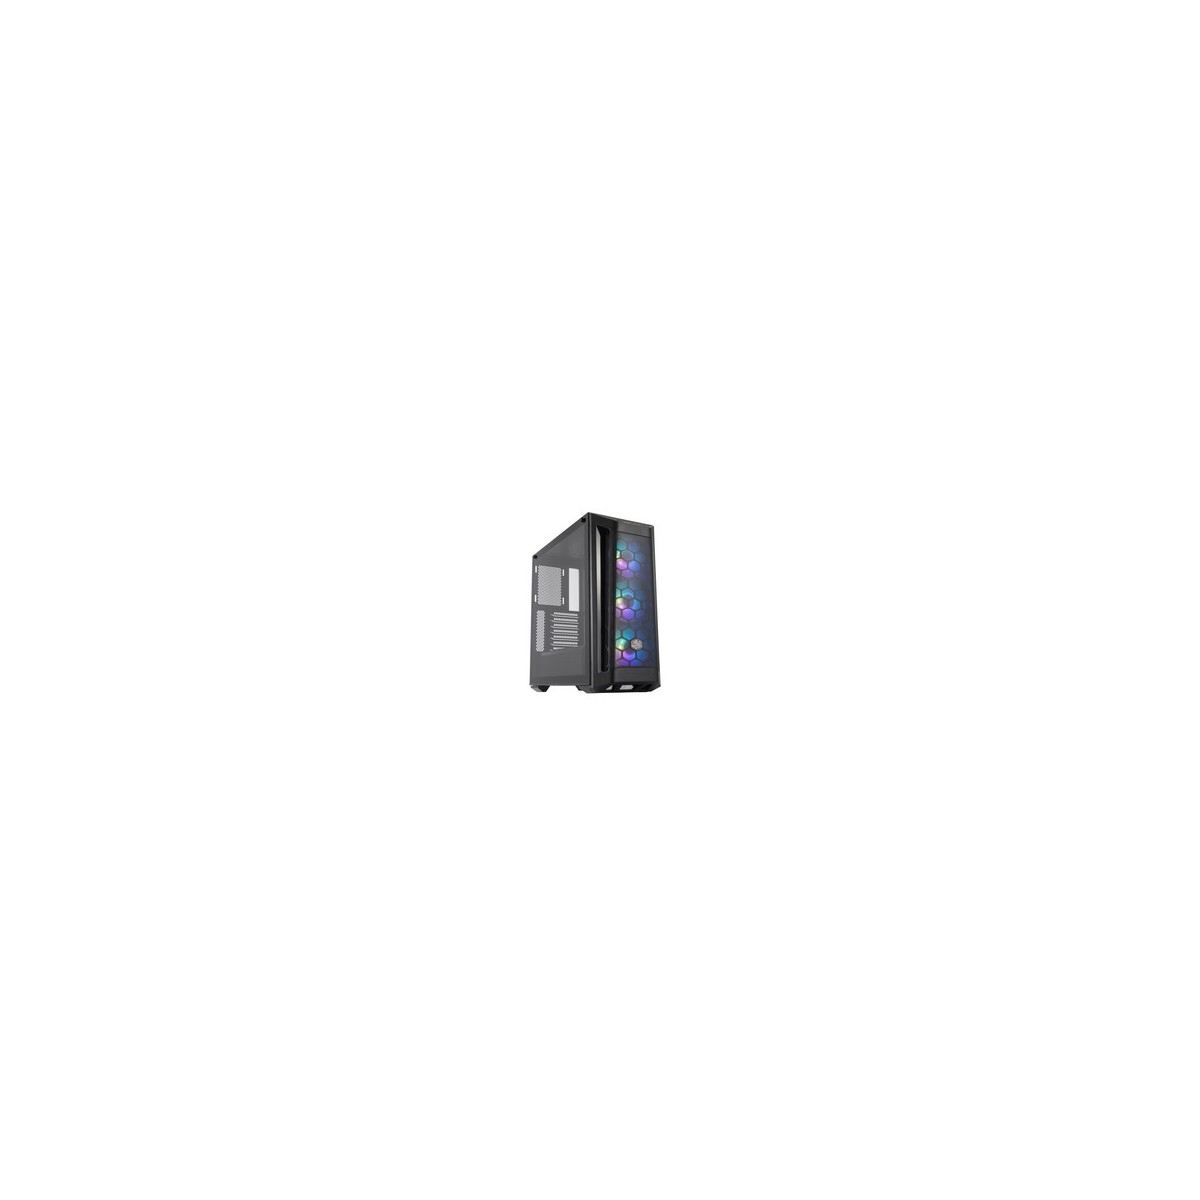 Cooler Master MasterBox MB511 ARGB - Midi Tower - PC - Black - ATX - EATX - micro ATX - Mini-ITX - SSI CEB - Plastic - Steel - T